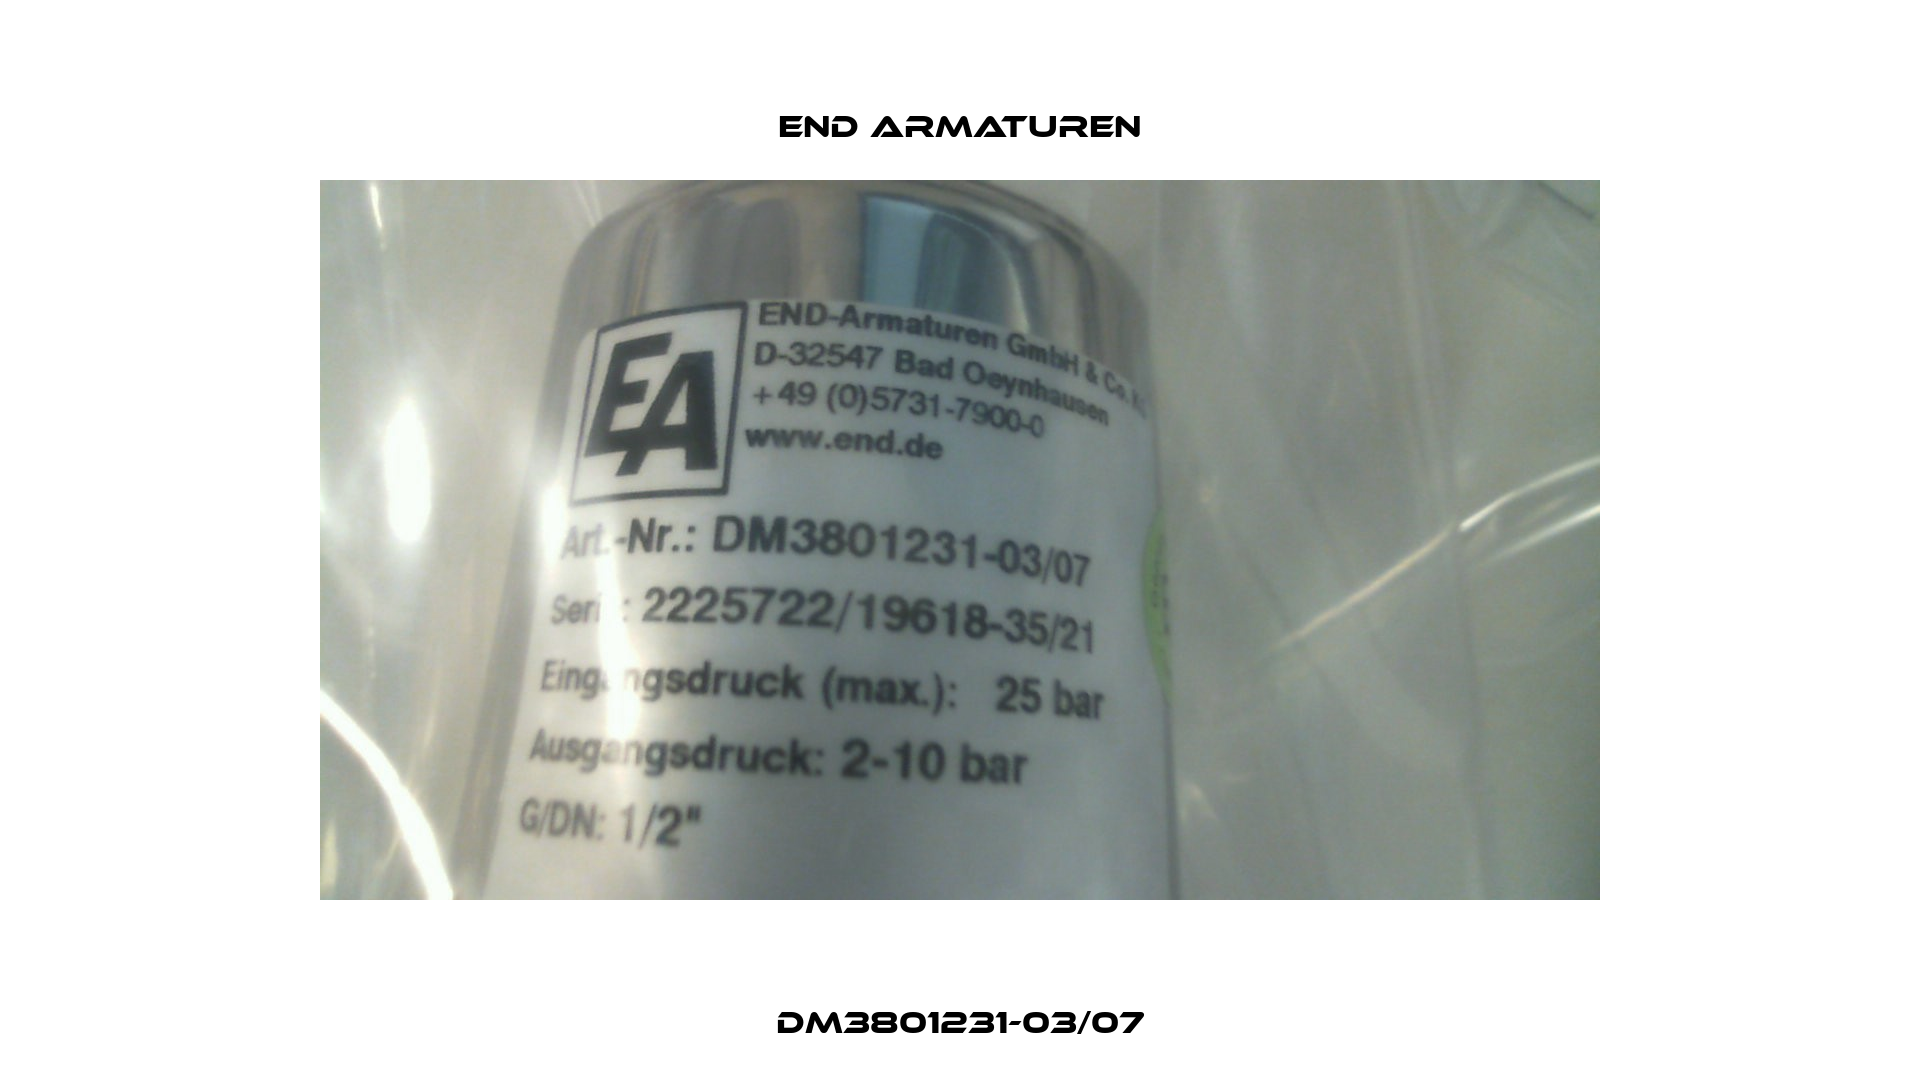 DM3801231-03/07 End Armaturen